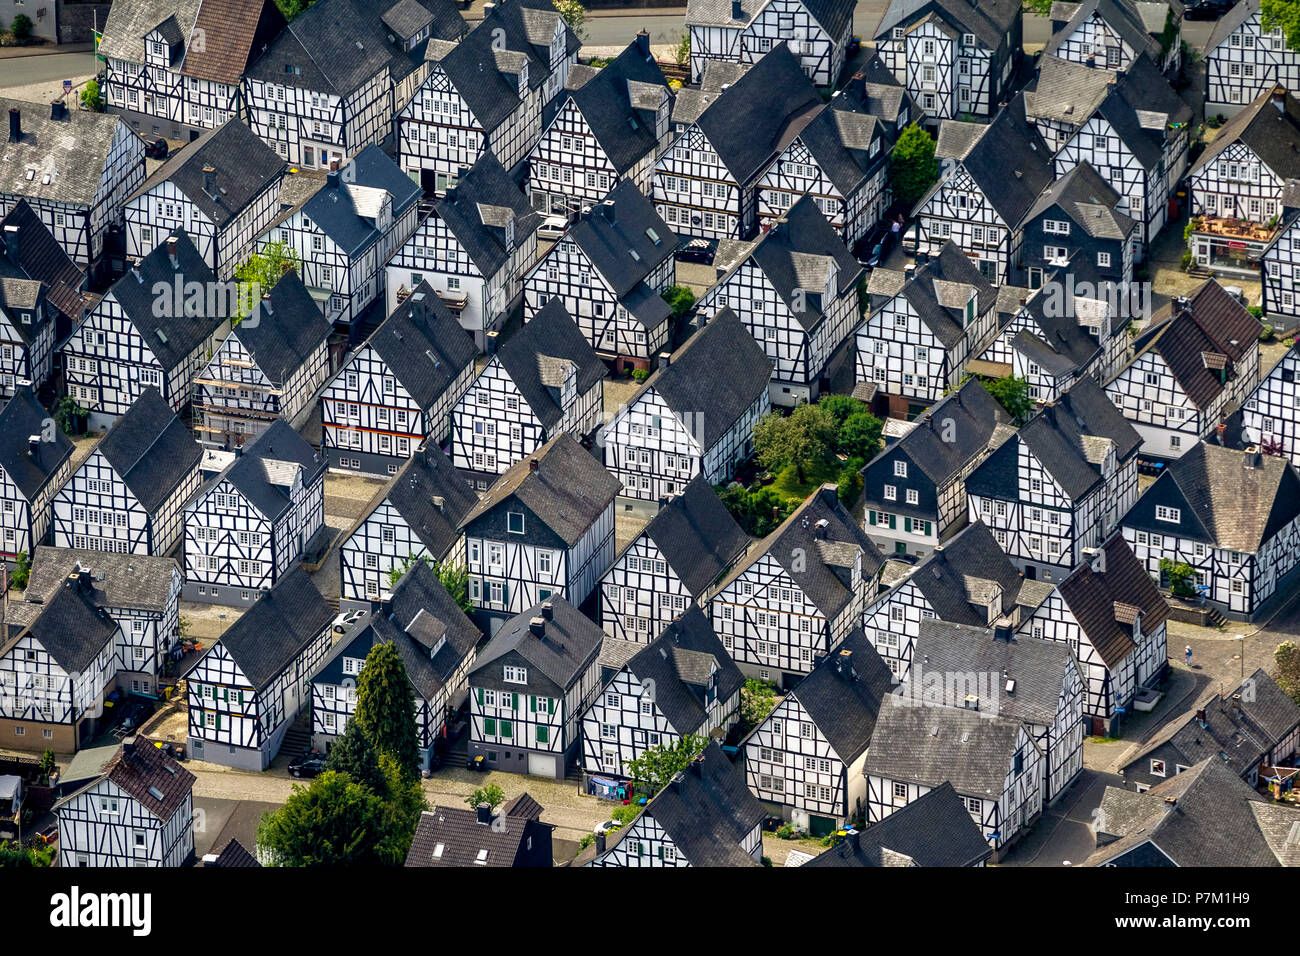 Half-timbered houses, Alte Flecken, historic town centre, Freudenberg, Siegen-Wittgenstein, North Rhine-Westphalia, Germany Stock Photo